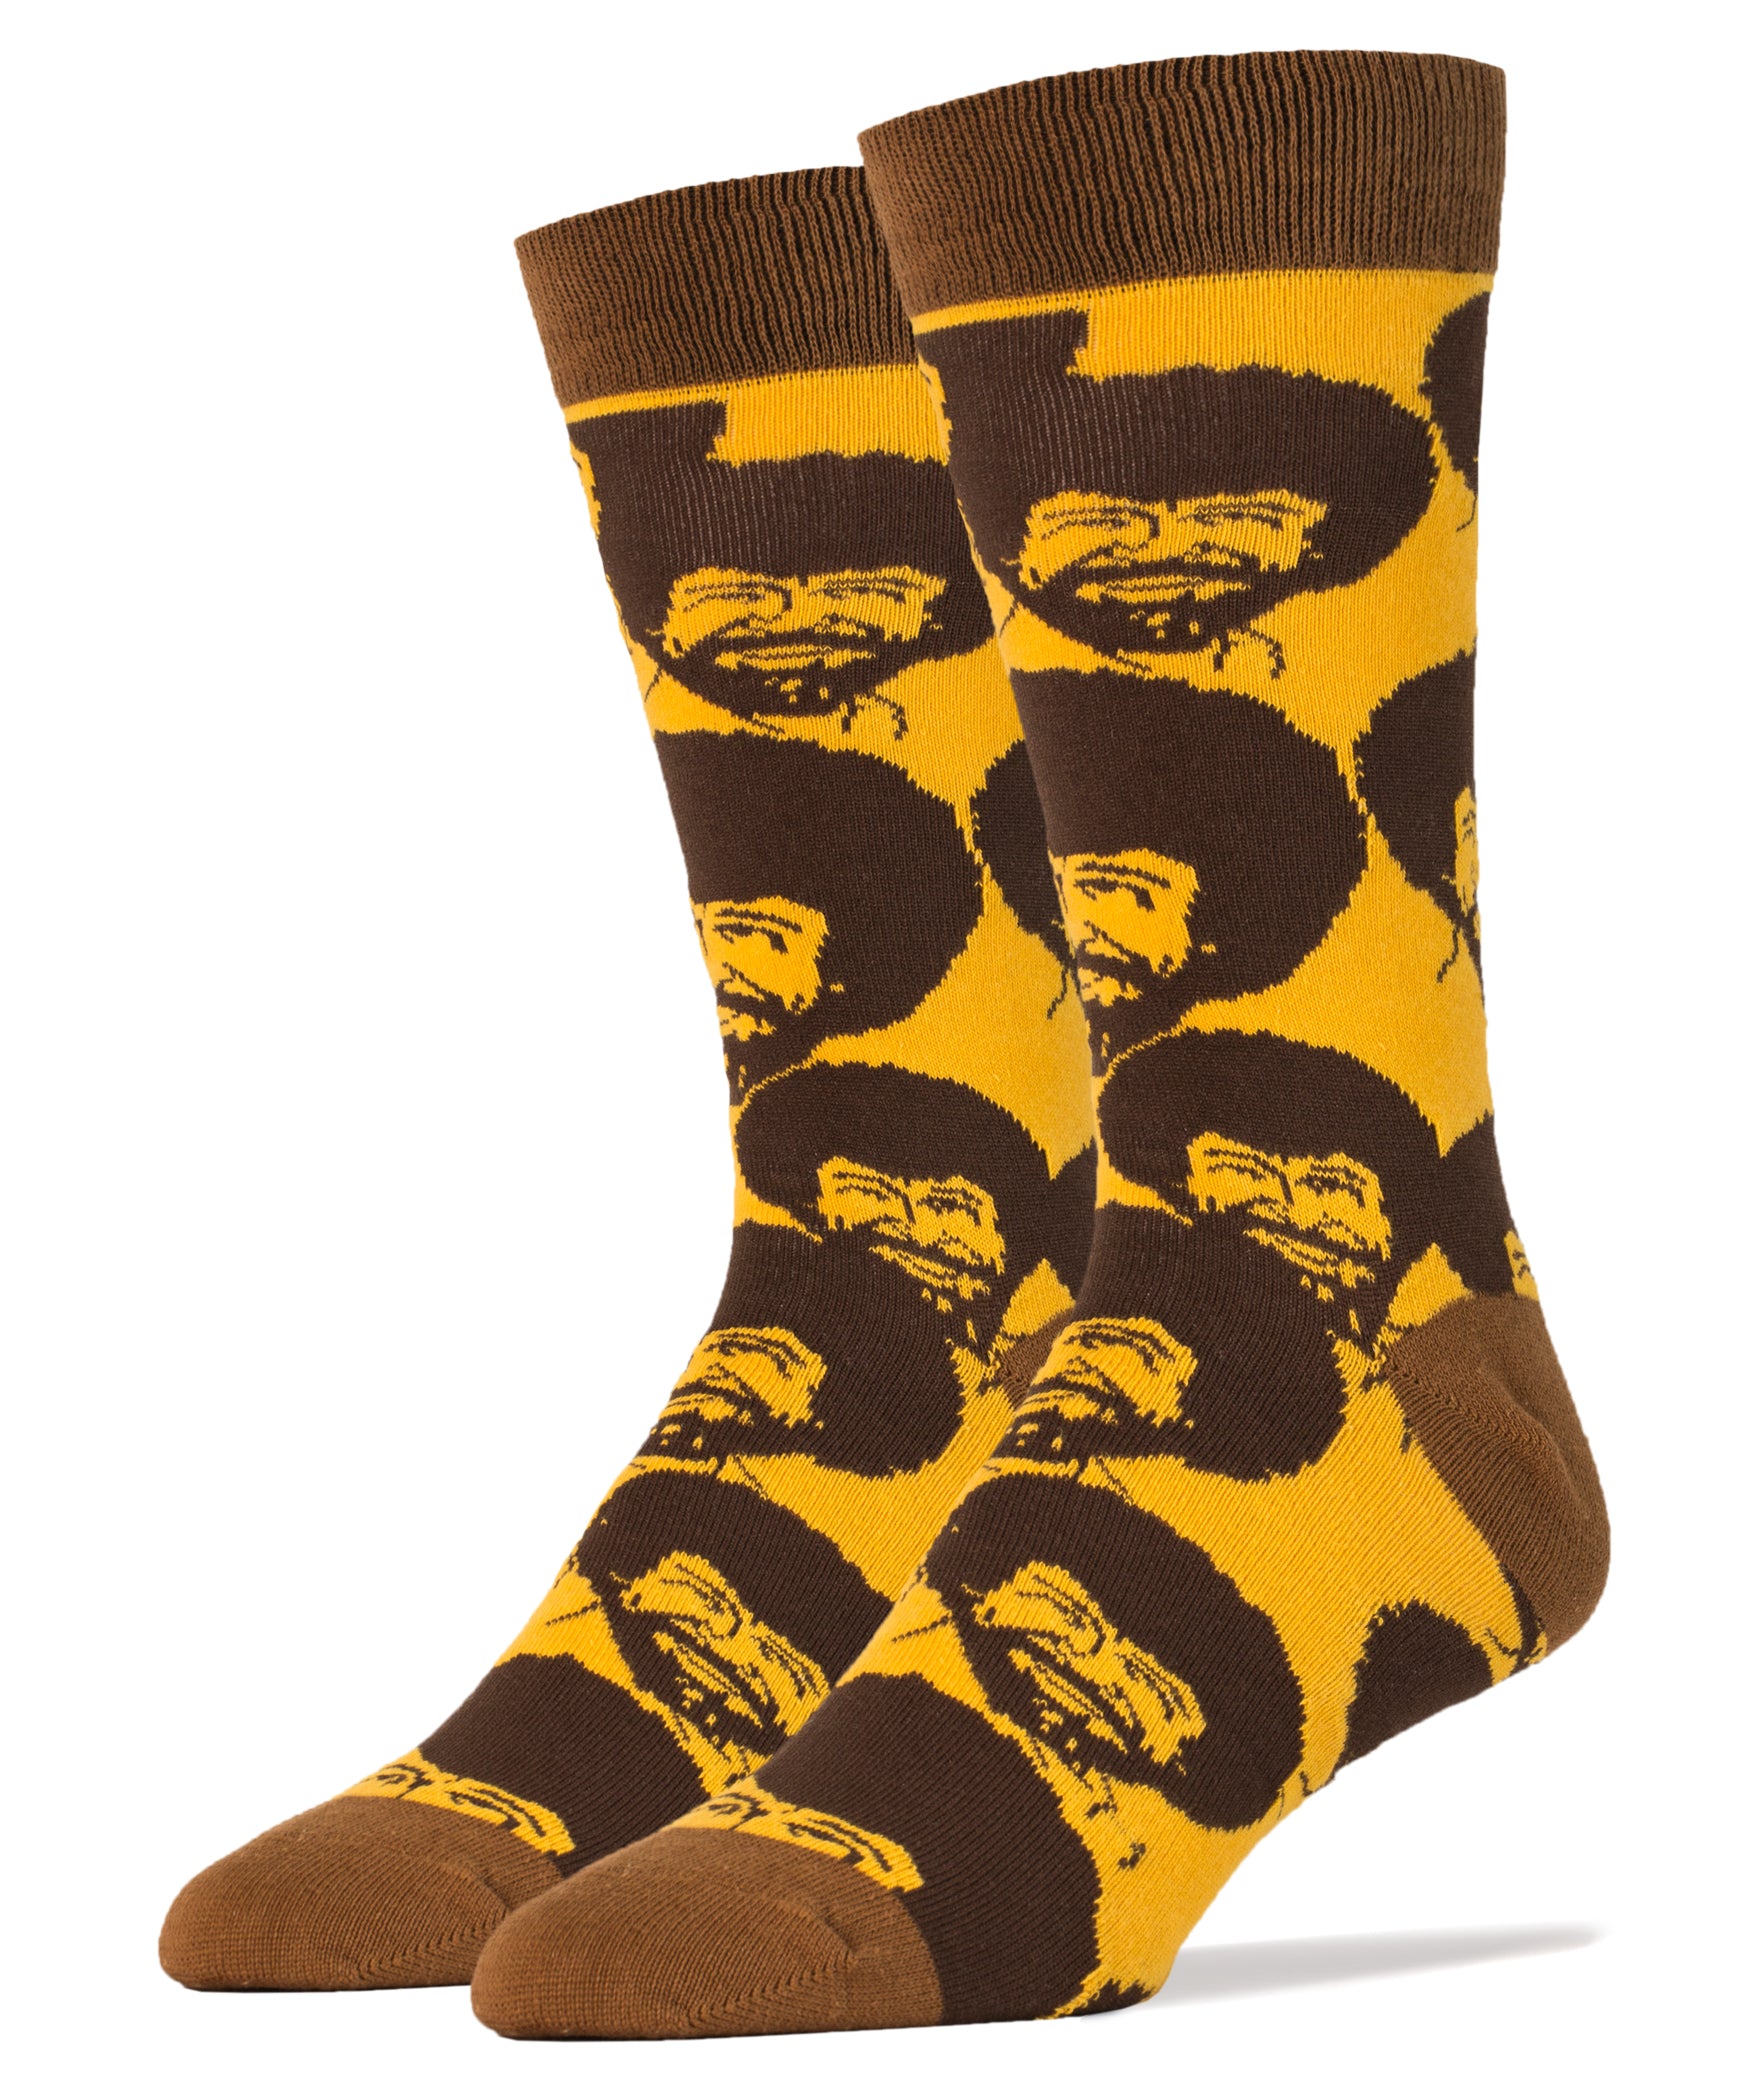 Bob Ross Flash Mob Socks, Novelty Socks For Men